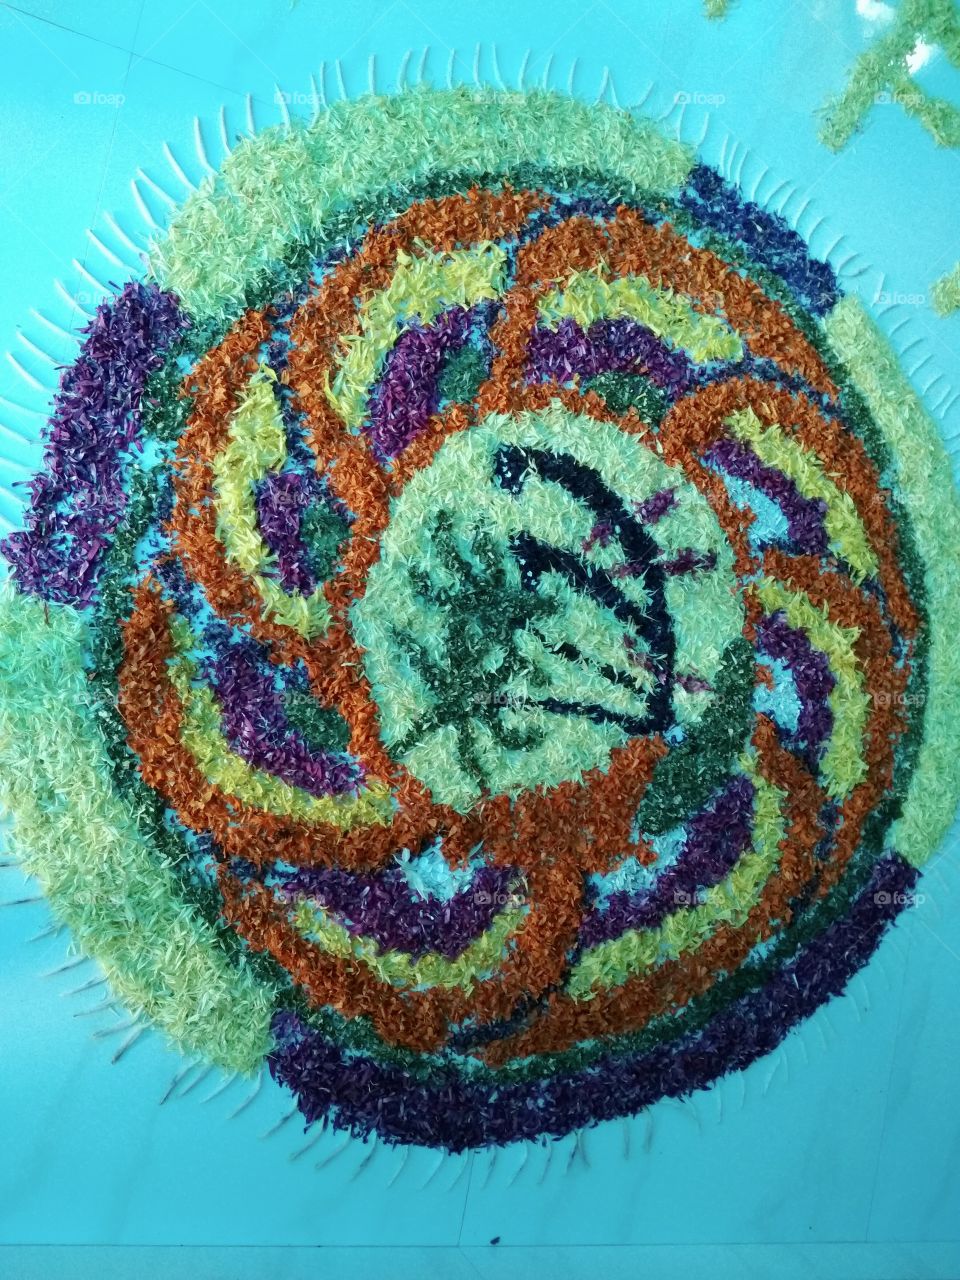 flower carpet